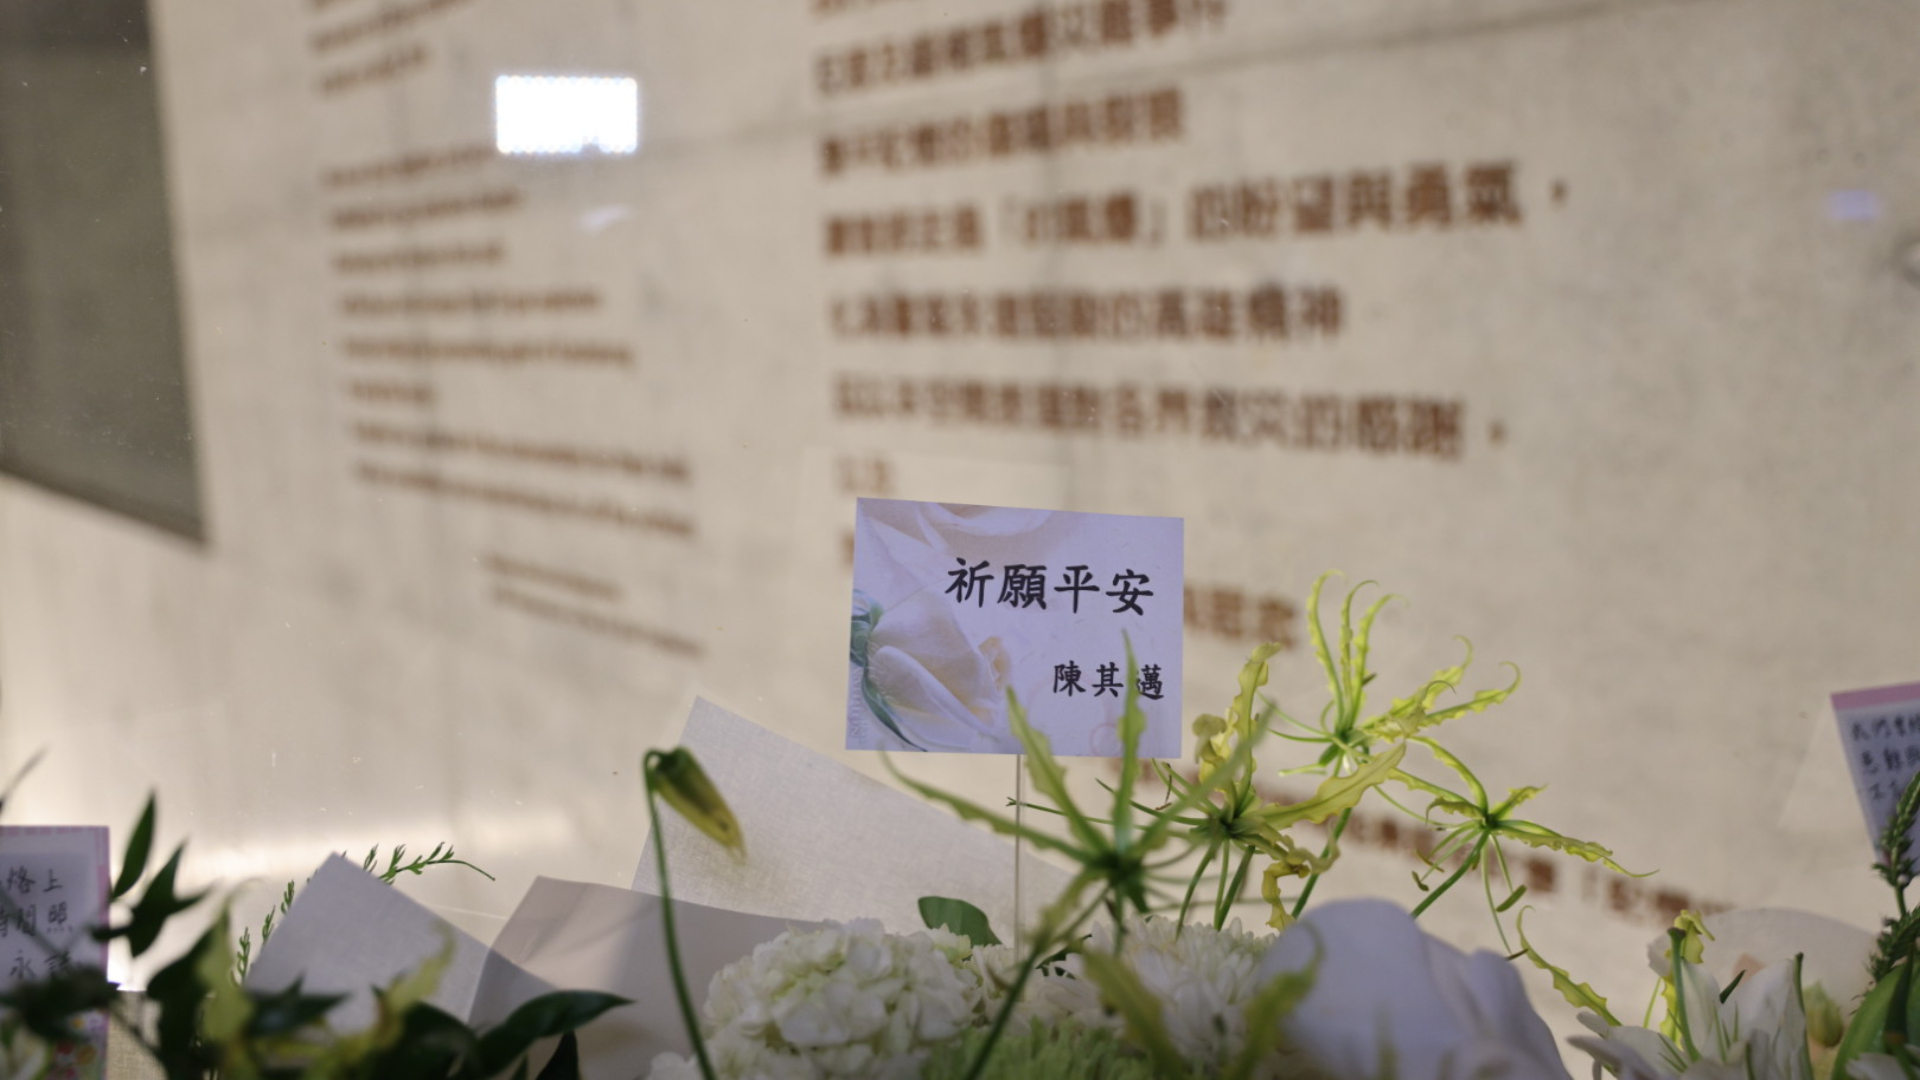 陳其邁的鮮花卡片上寫下「祈願平安」4字。翻攝臉書